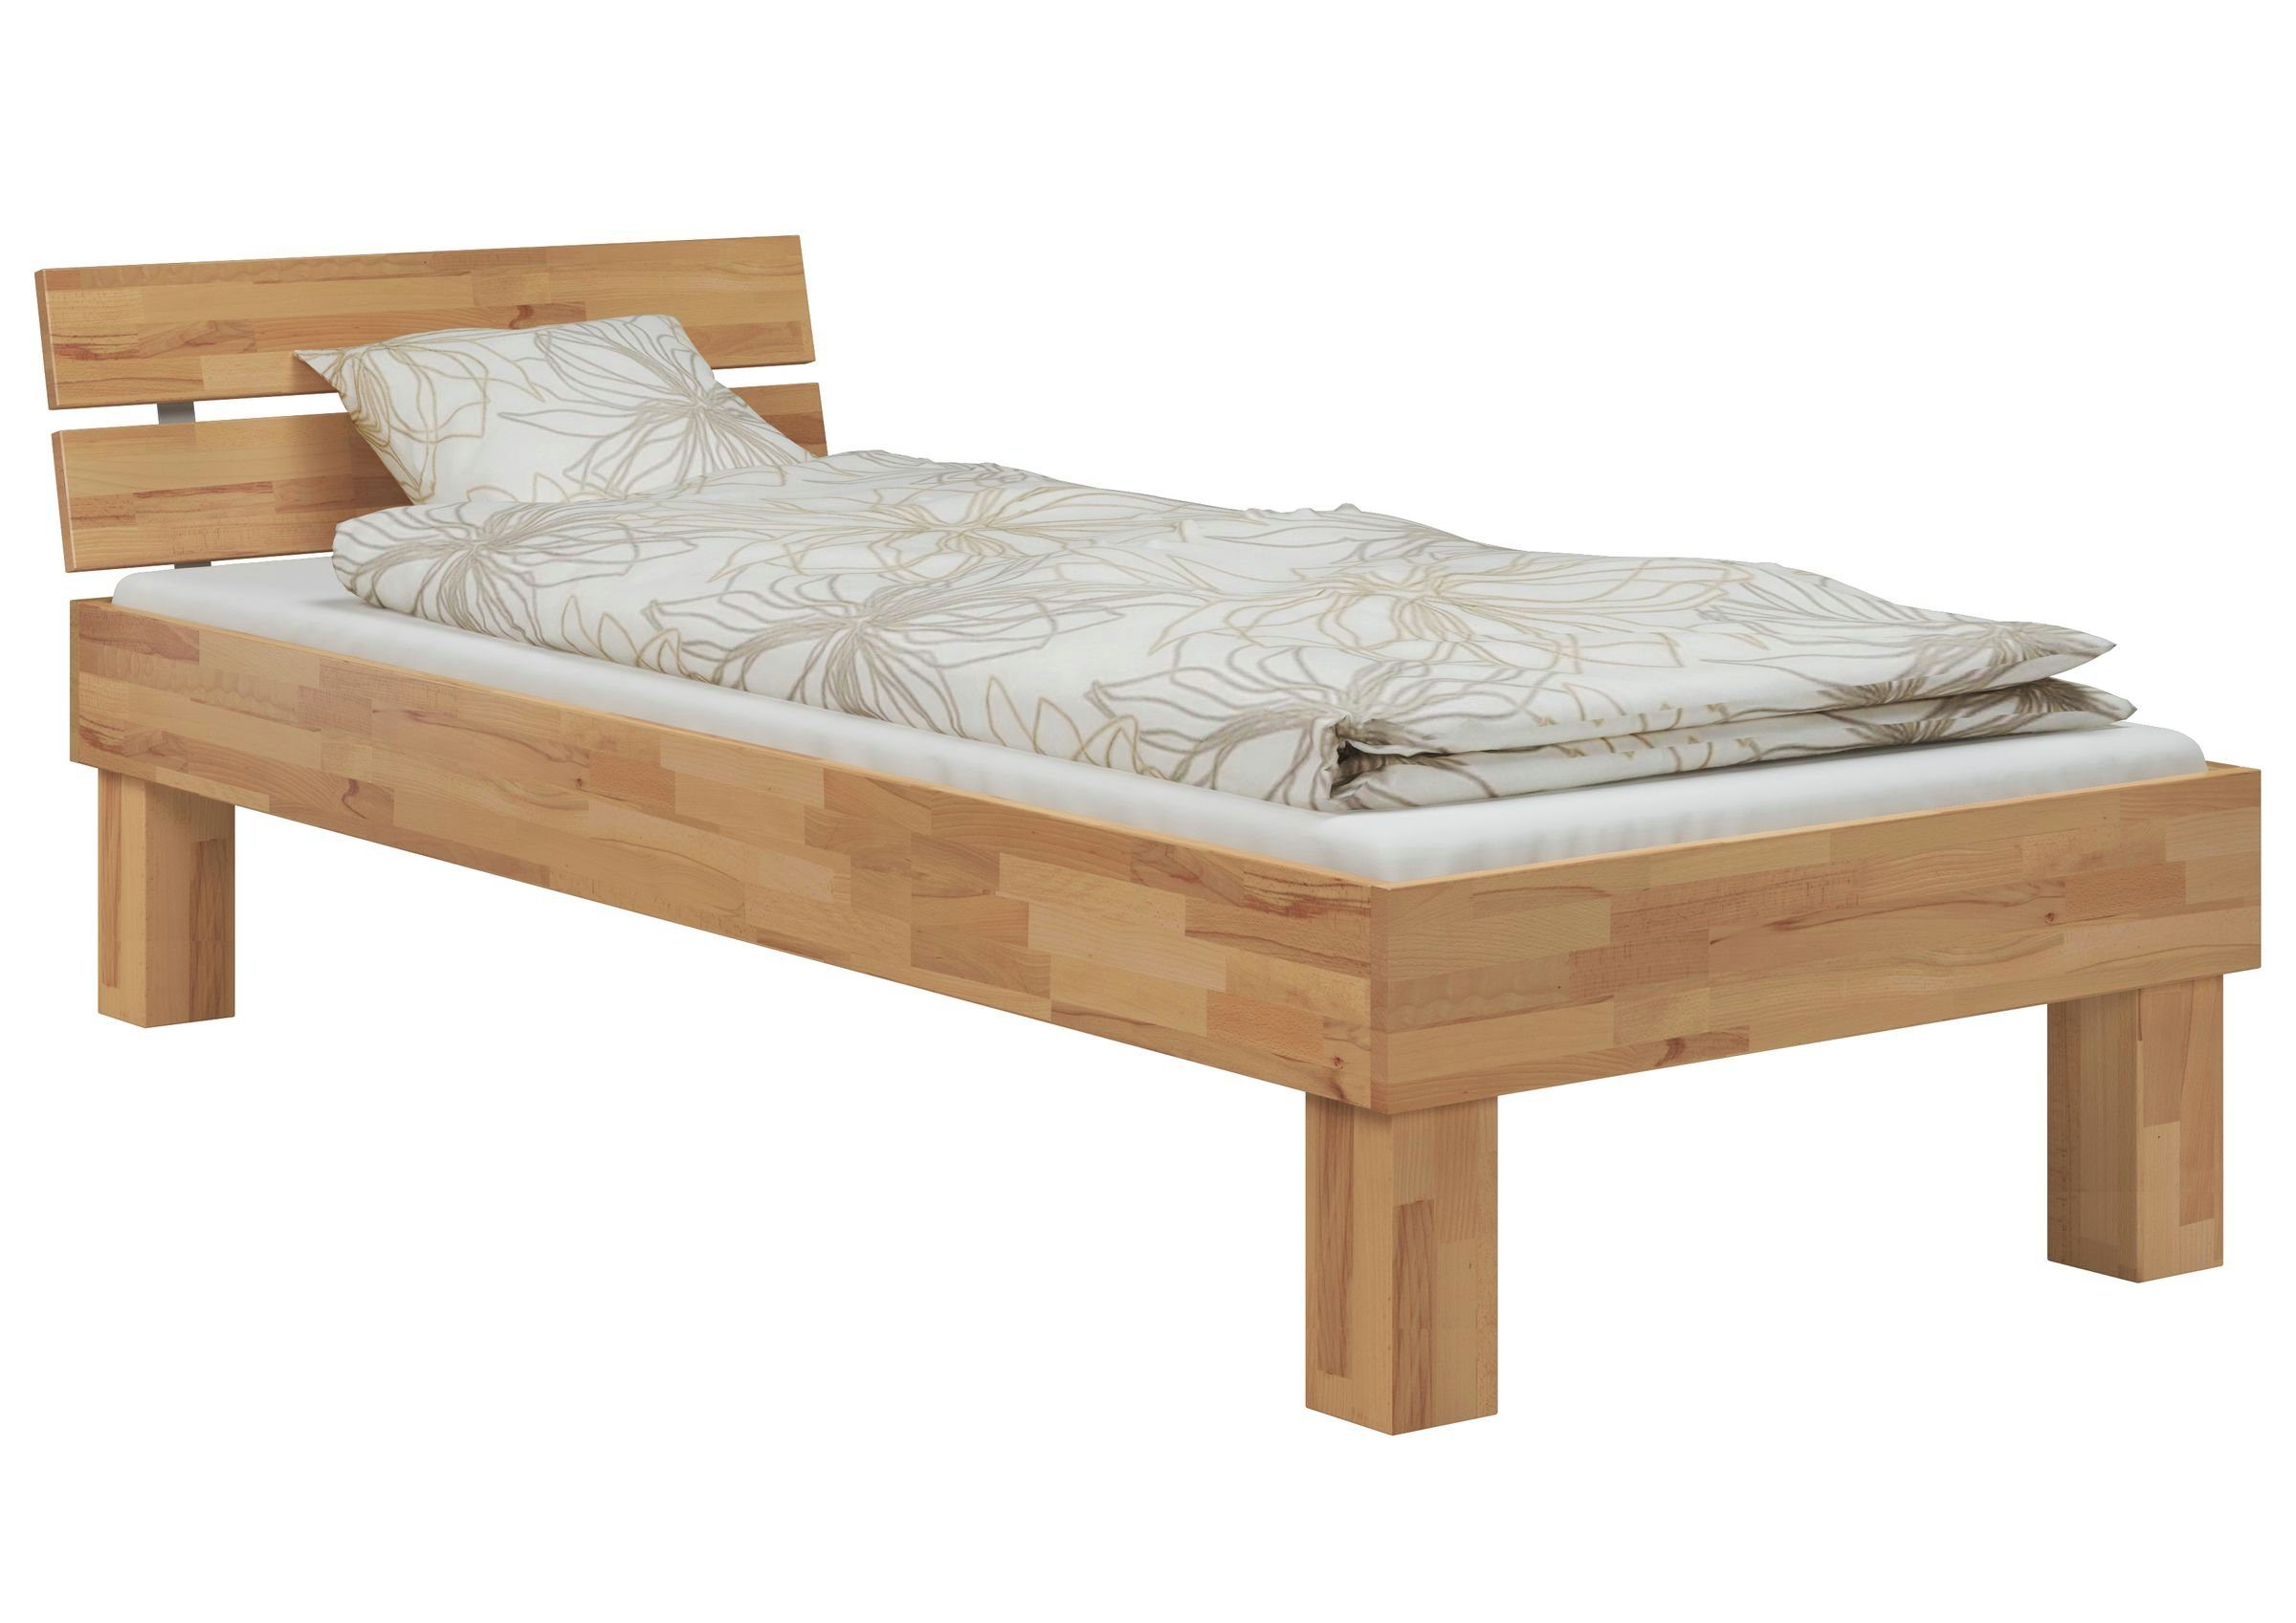 ERST-HOLZ Bett Einzelbett hoch Überlänge lackiert 120x220 Buchefarblos Matratze, + Rollrost + Buche